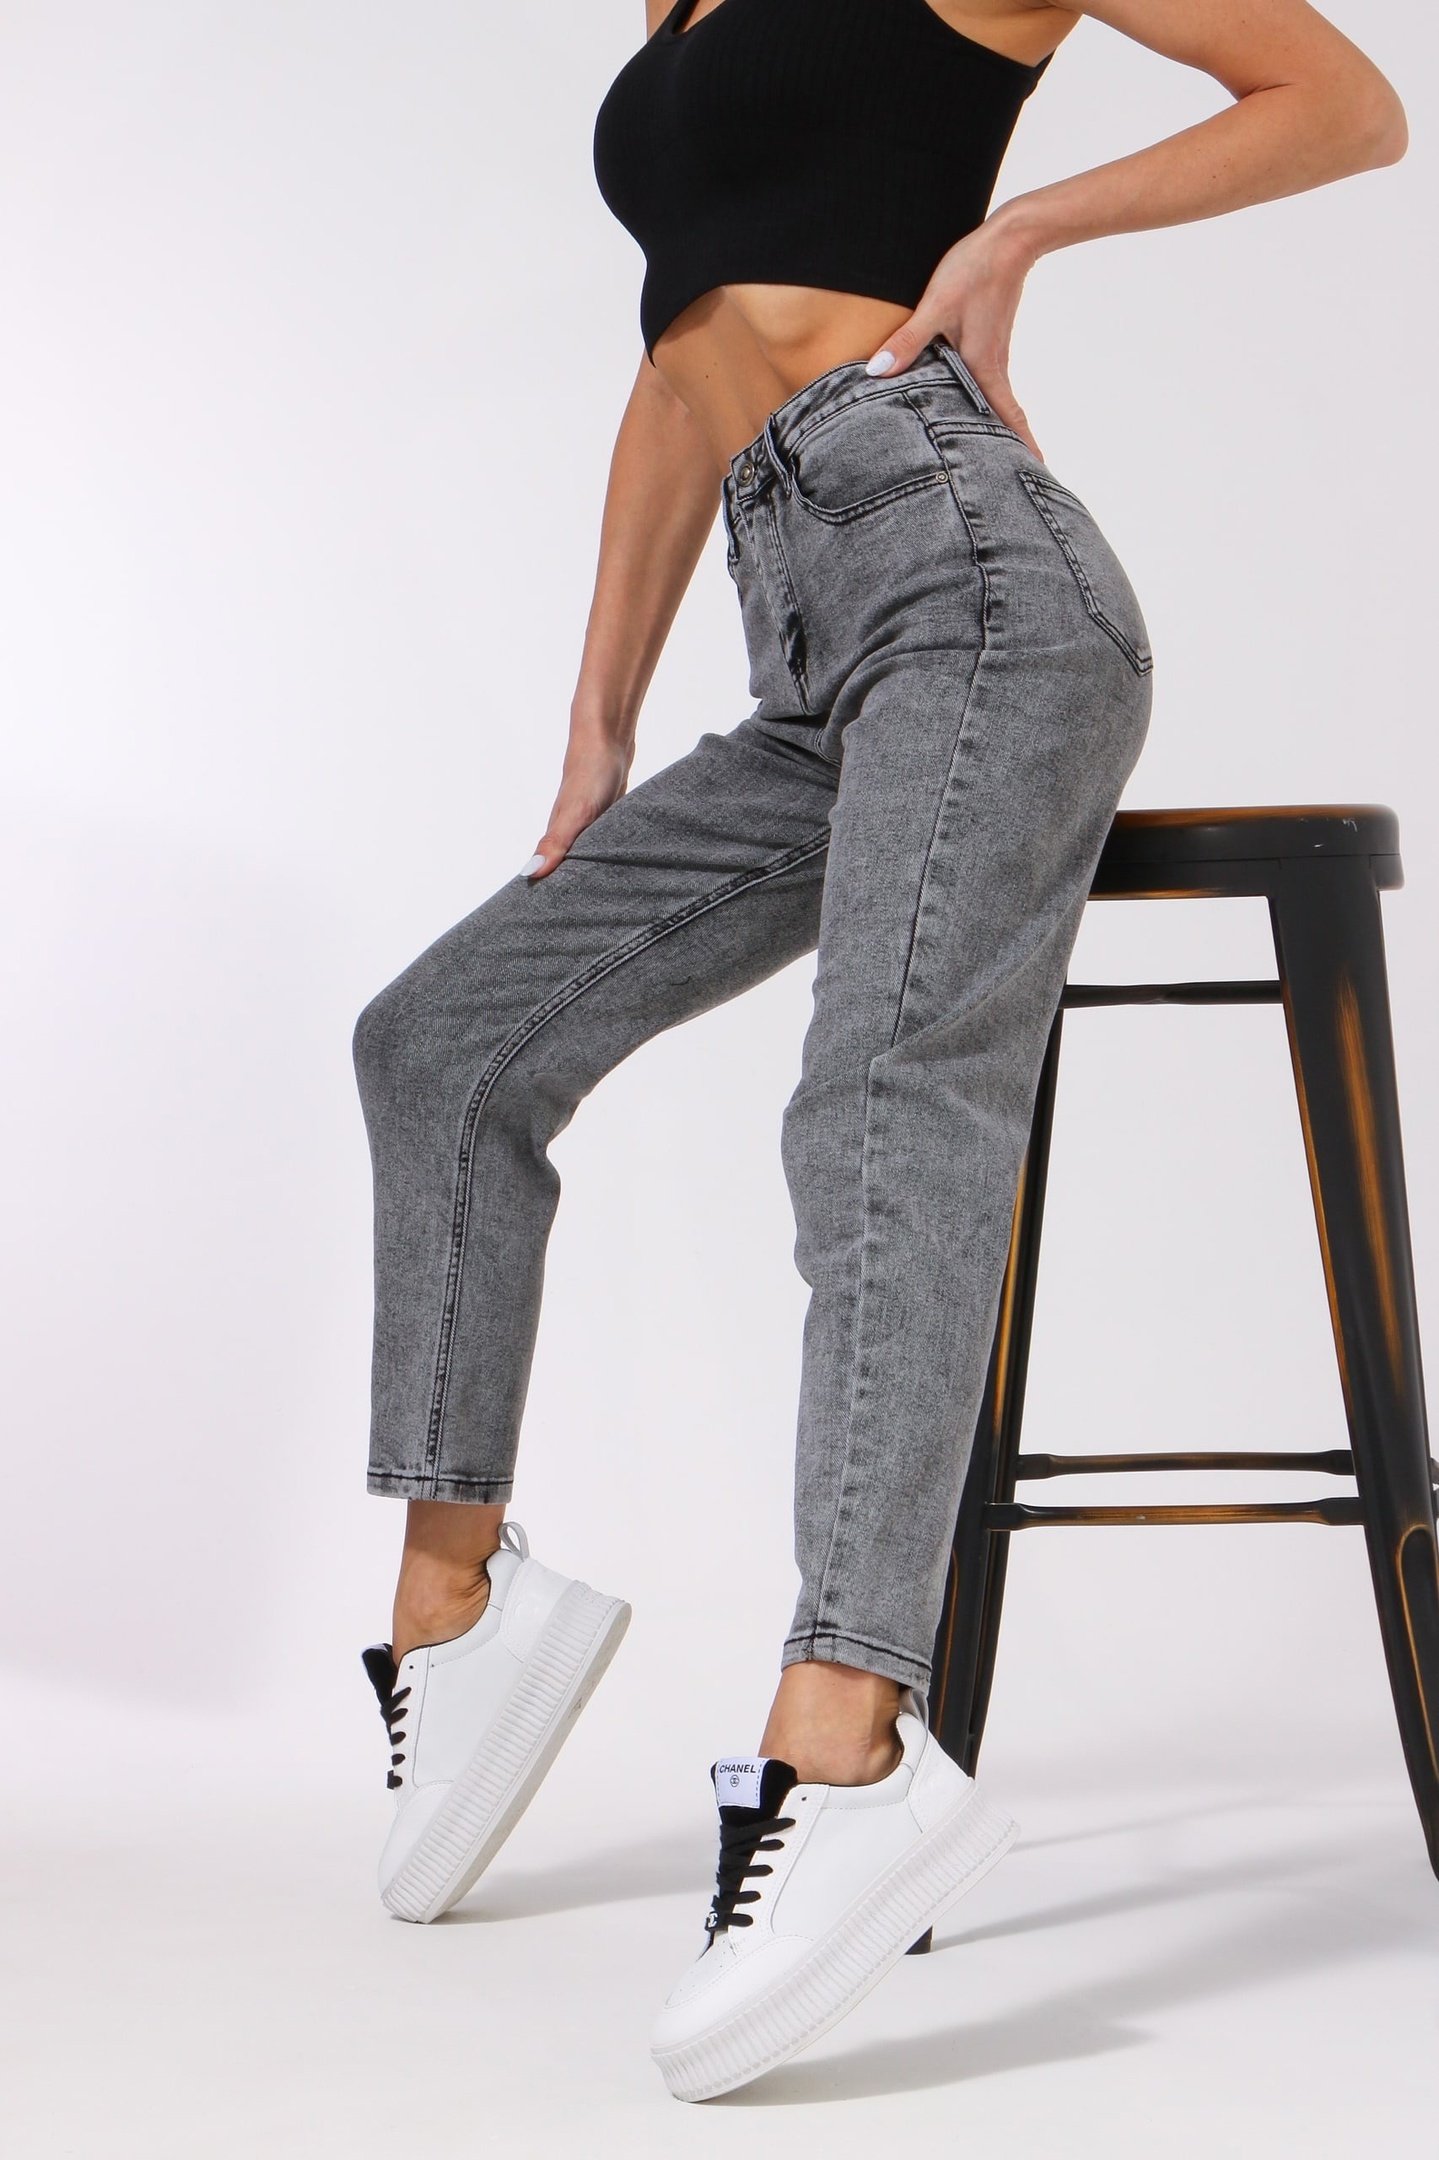 Стильные джинсы женские